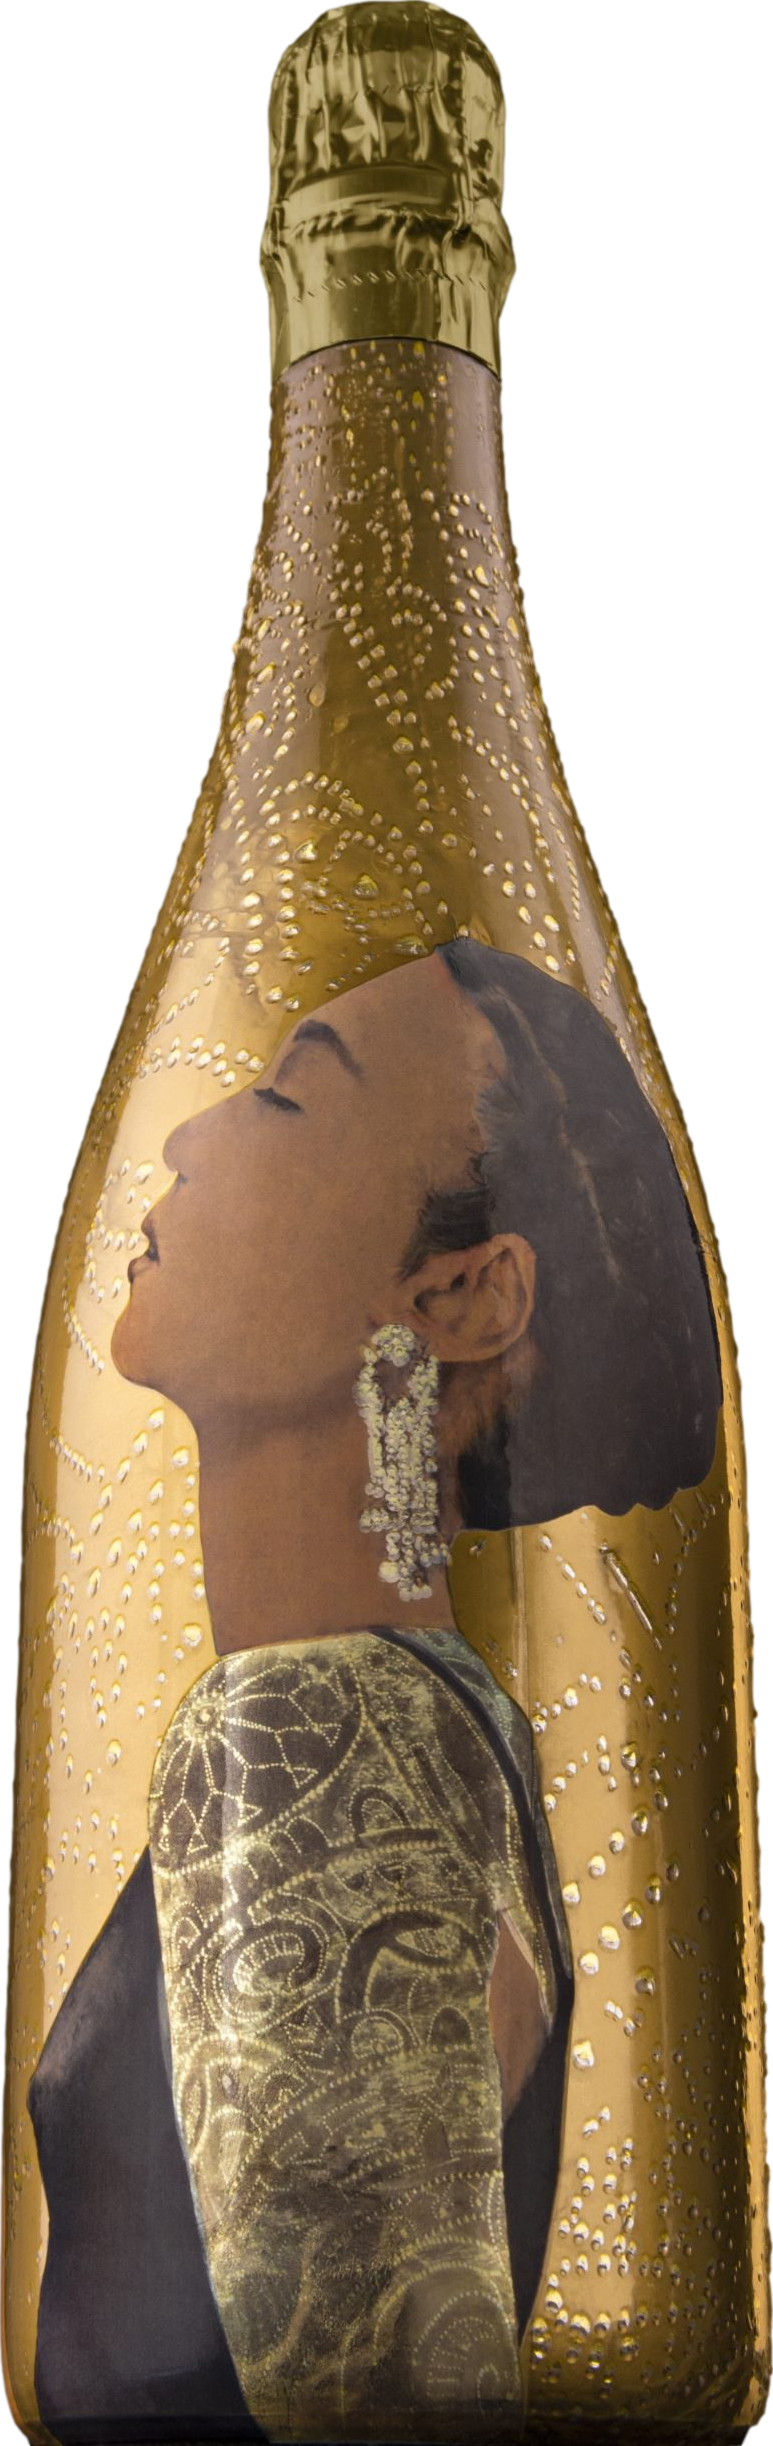 Champagne VIK La Piu Belle Millesime 2009 Šumivé 12.5% 0.75 l